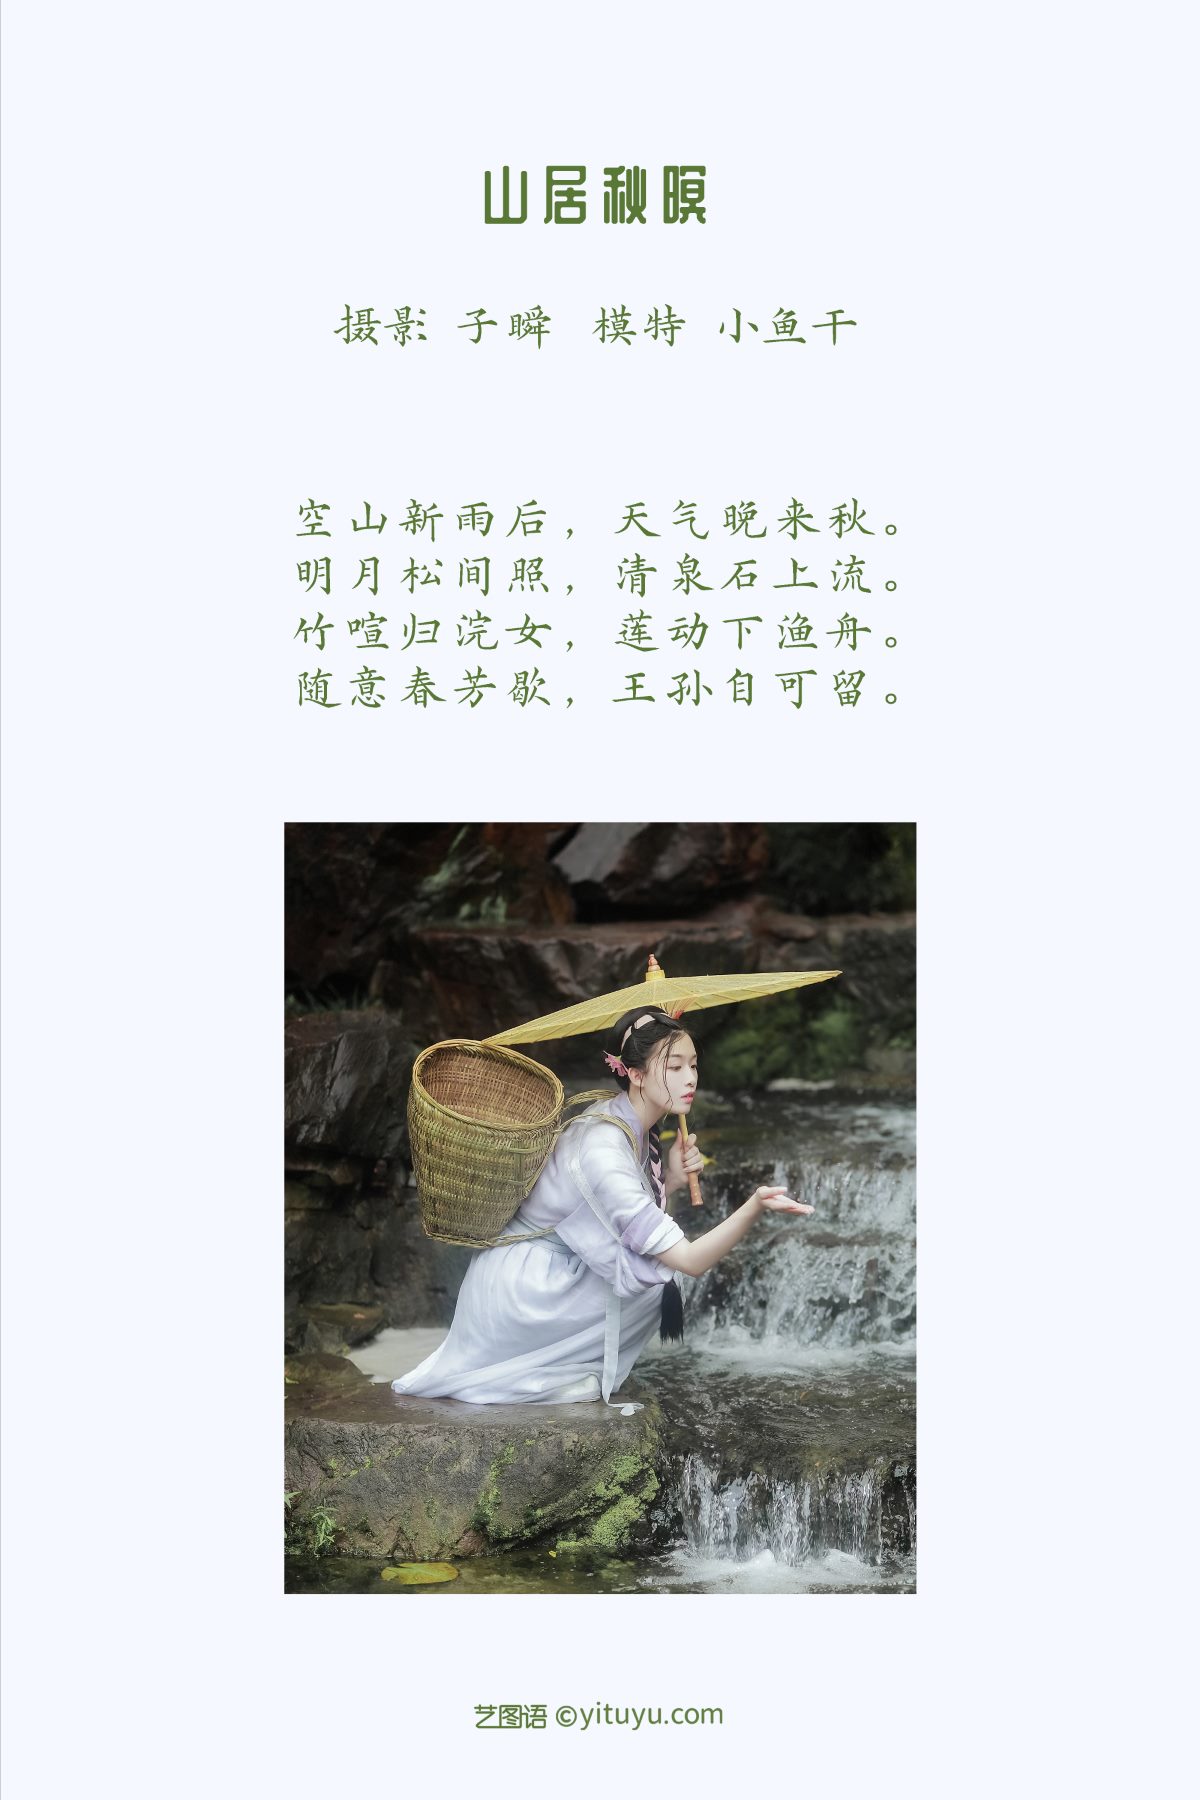 YiTuYu艺图语 Vol 1063 Miao Miao Jia De Xiao Yu Gan 0002 8288713185.jpg